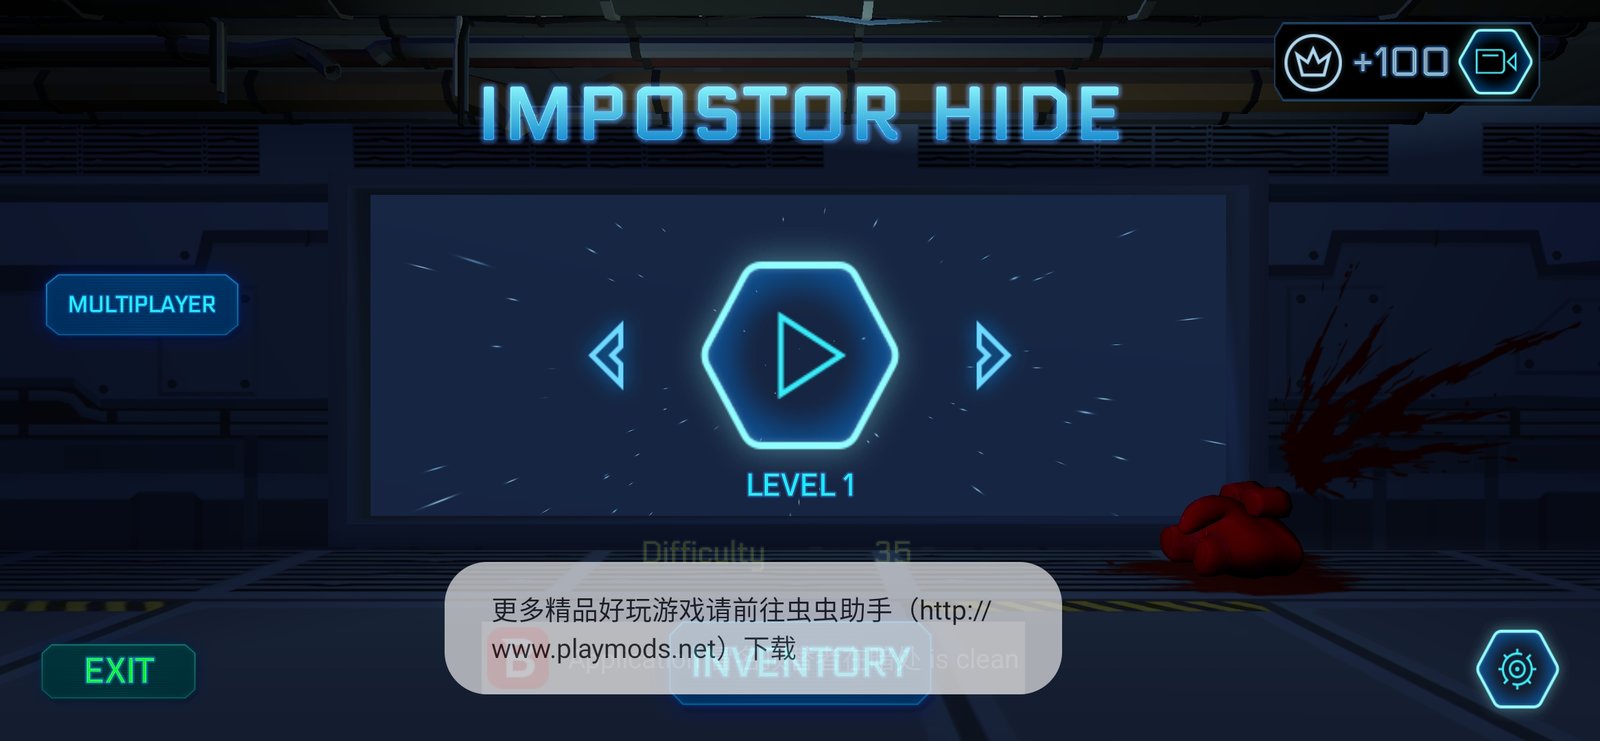 Imposter Hide Online 3D Horror v1.97 Mod (Unlimited Money) Apk - Android Mods  Apk